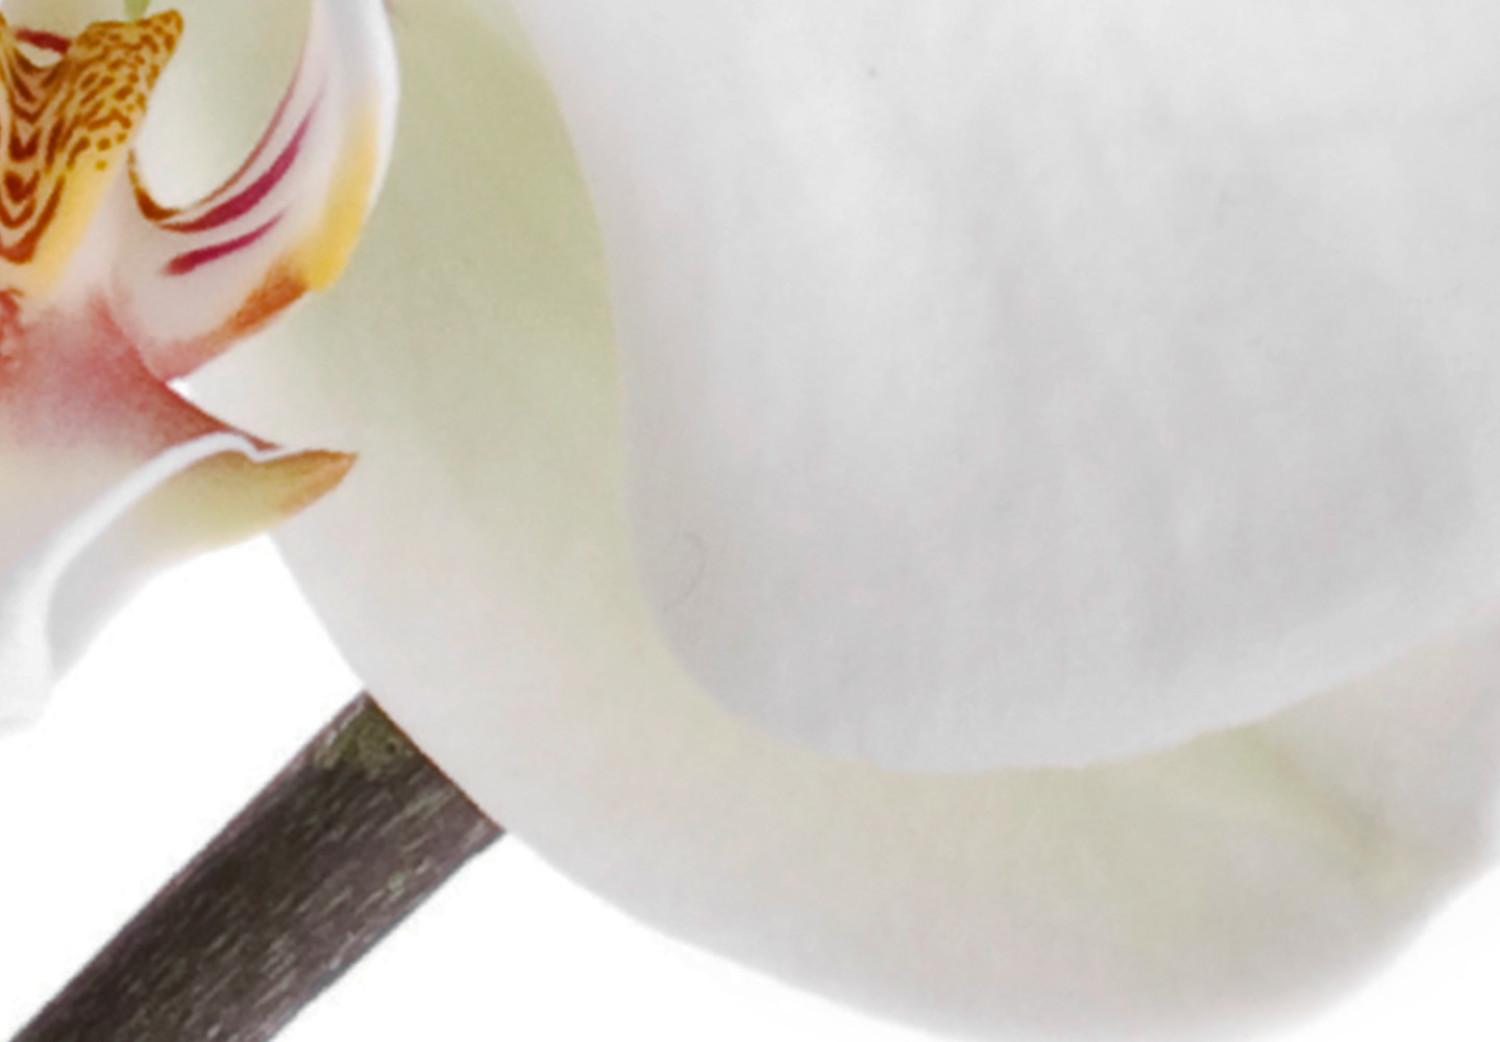 Cuadro decorativo Orquídea en flor - abstracción con una flor blanca sobre fondo blanco